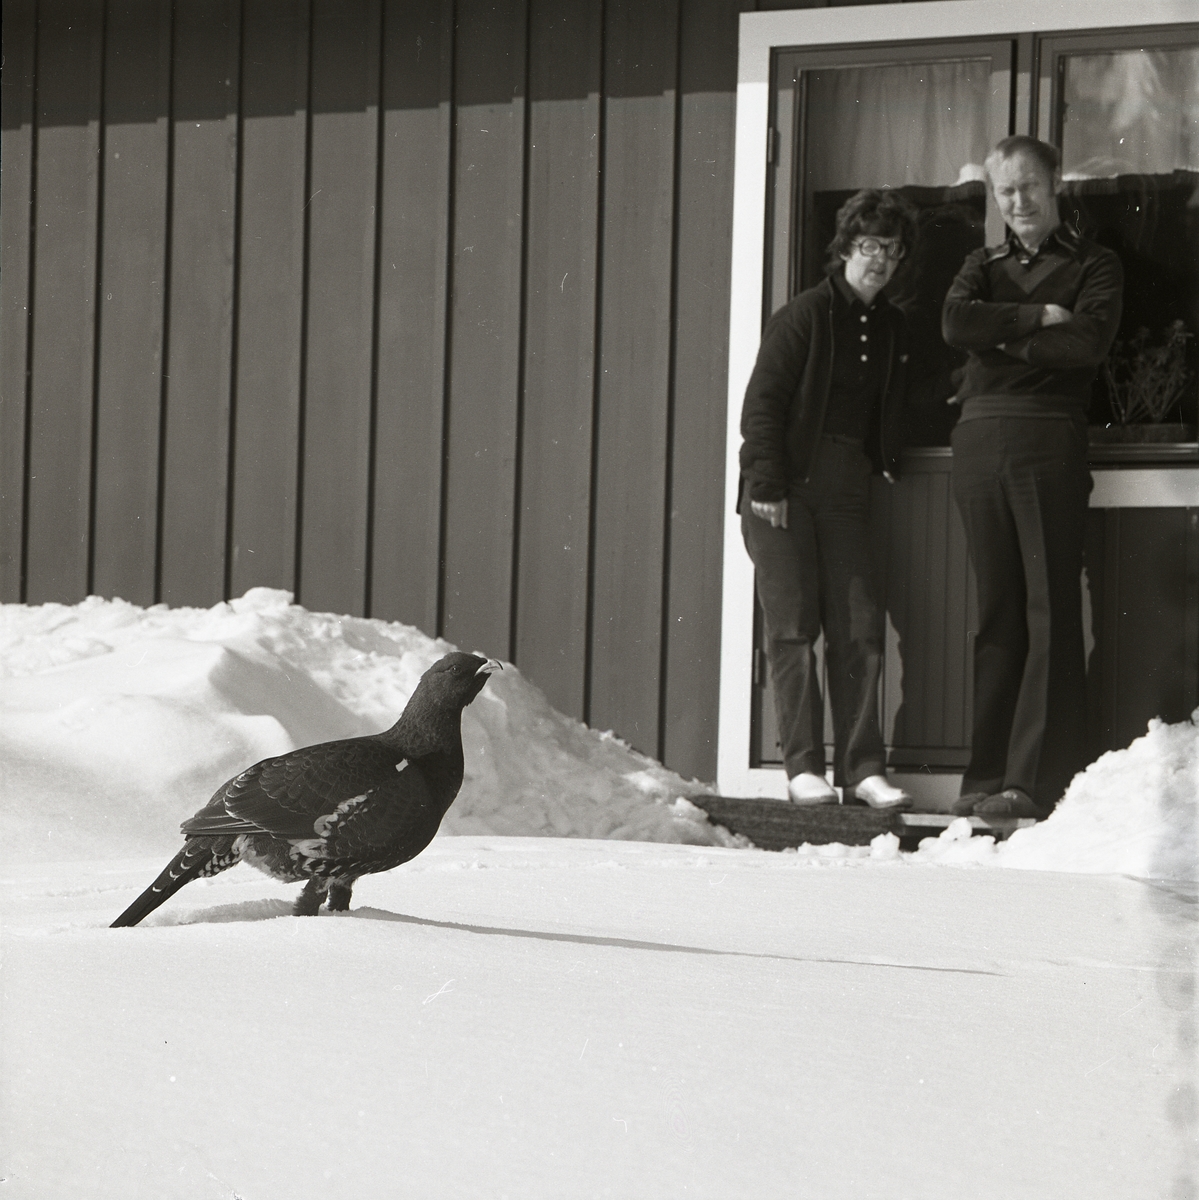 I Trönö 1980 har en djärv tjädertupp vandrat nära intill ett bostadshus och två personer har stigit ut på en stentrapp för att beskåda den. Tjädern står i decimeterdjup snö och längs husväggen står snövallarna ännu högre från marken.